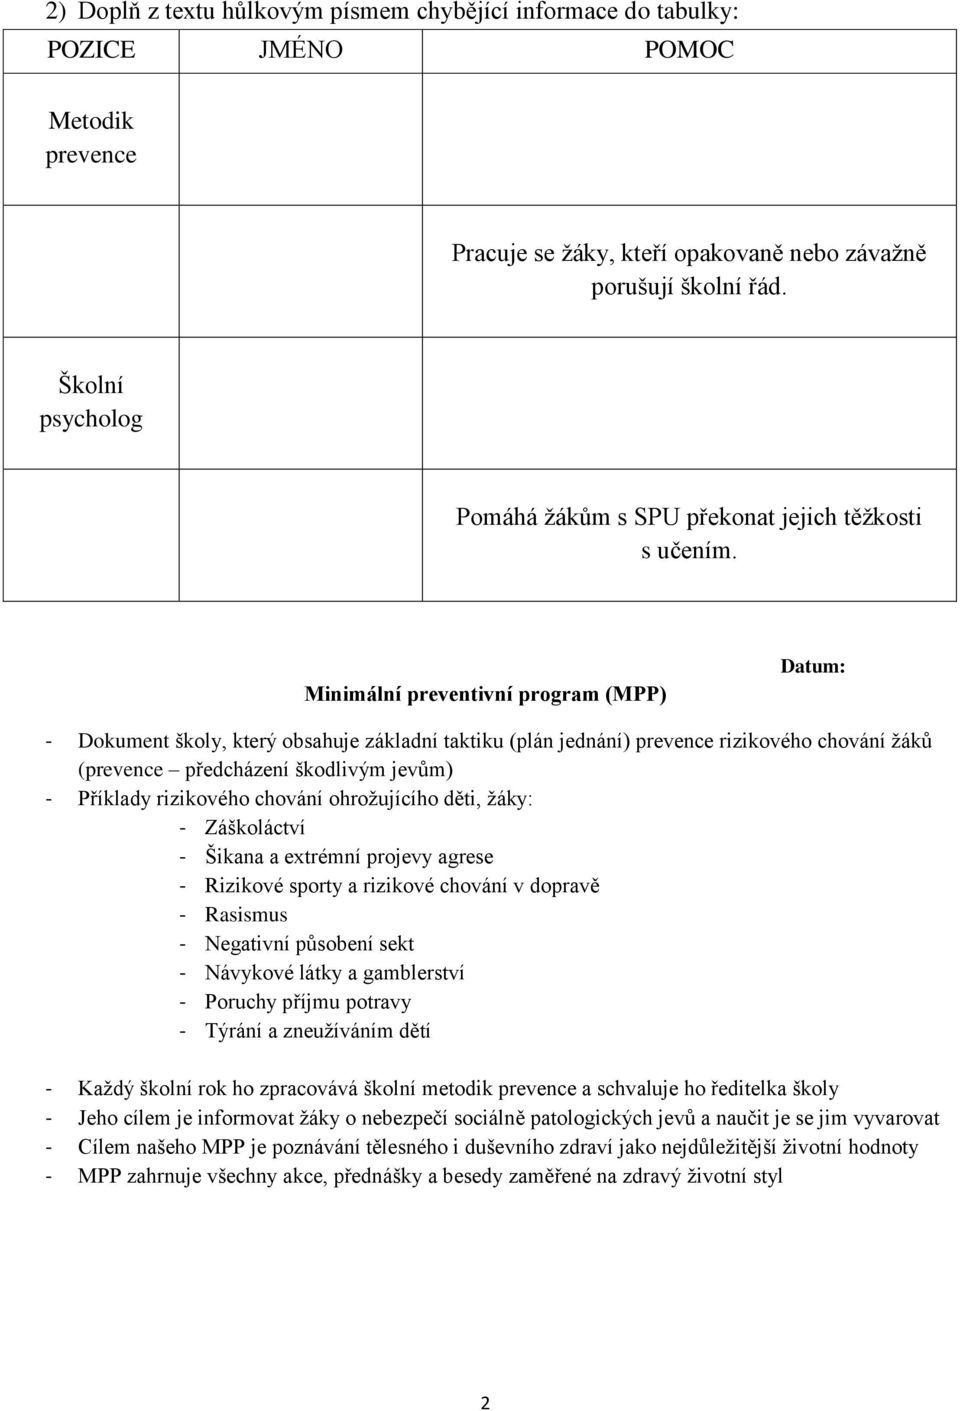 Minimální preventivní program (MPP) - Dokument školy, který obsahuje základní taktiku (plán jednání) prevence rizikového chování ţáků (prevence předcházení škodlivým jevům) - Příklady rizikového